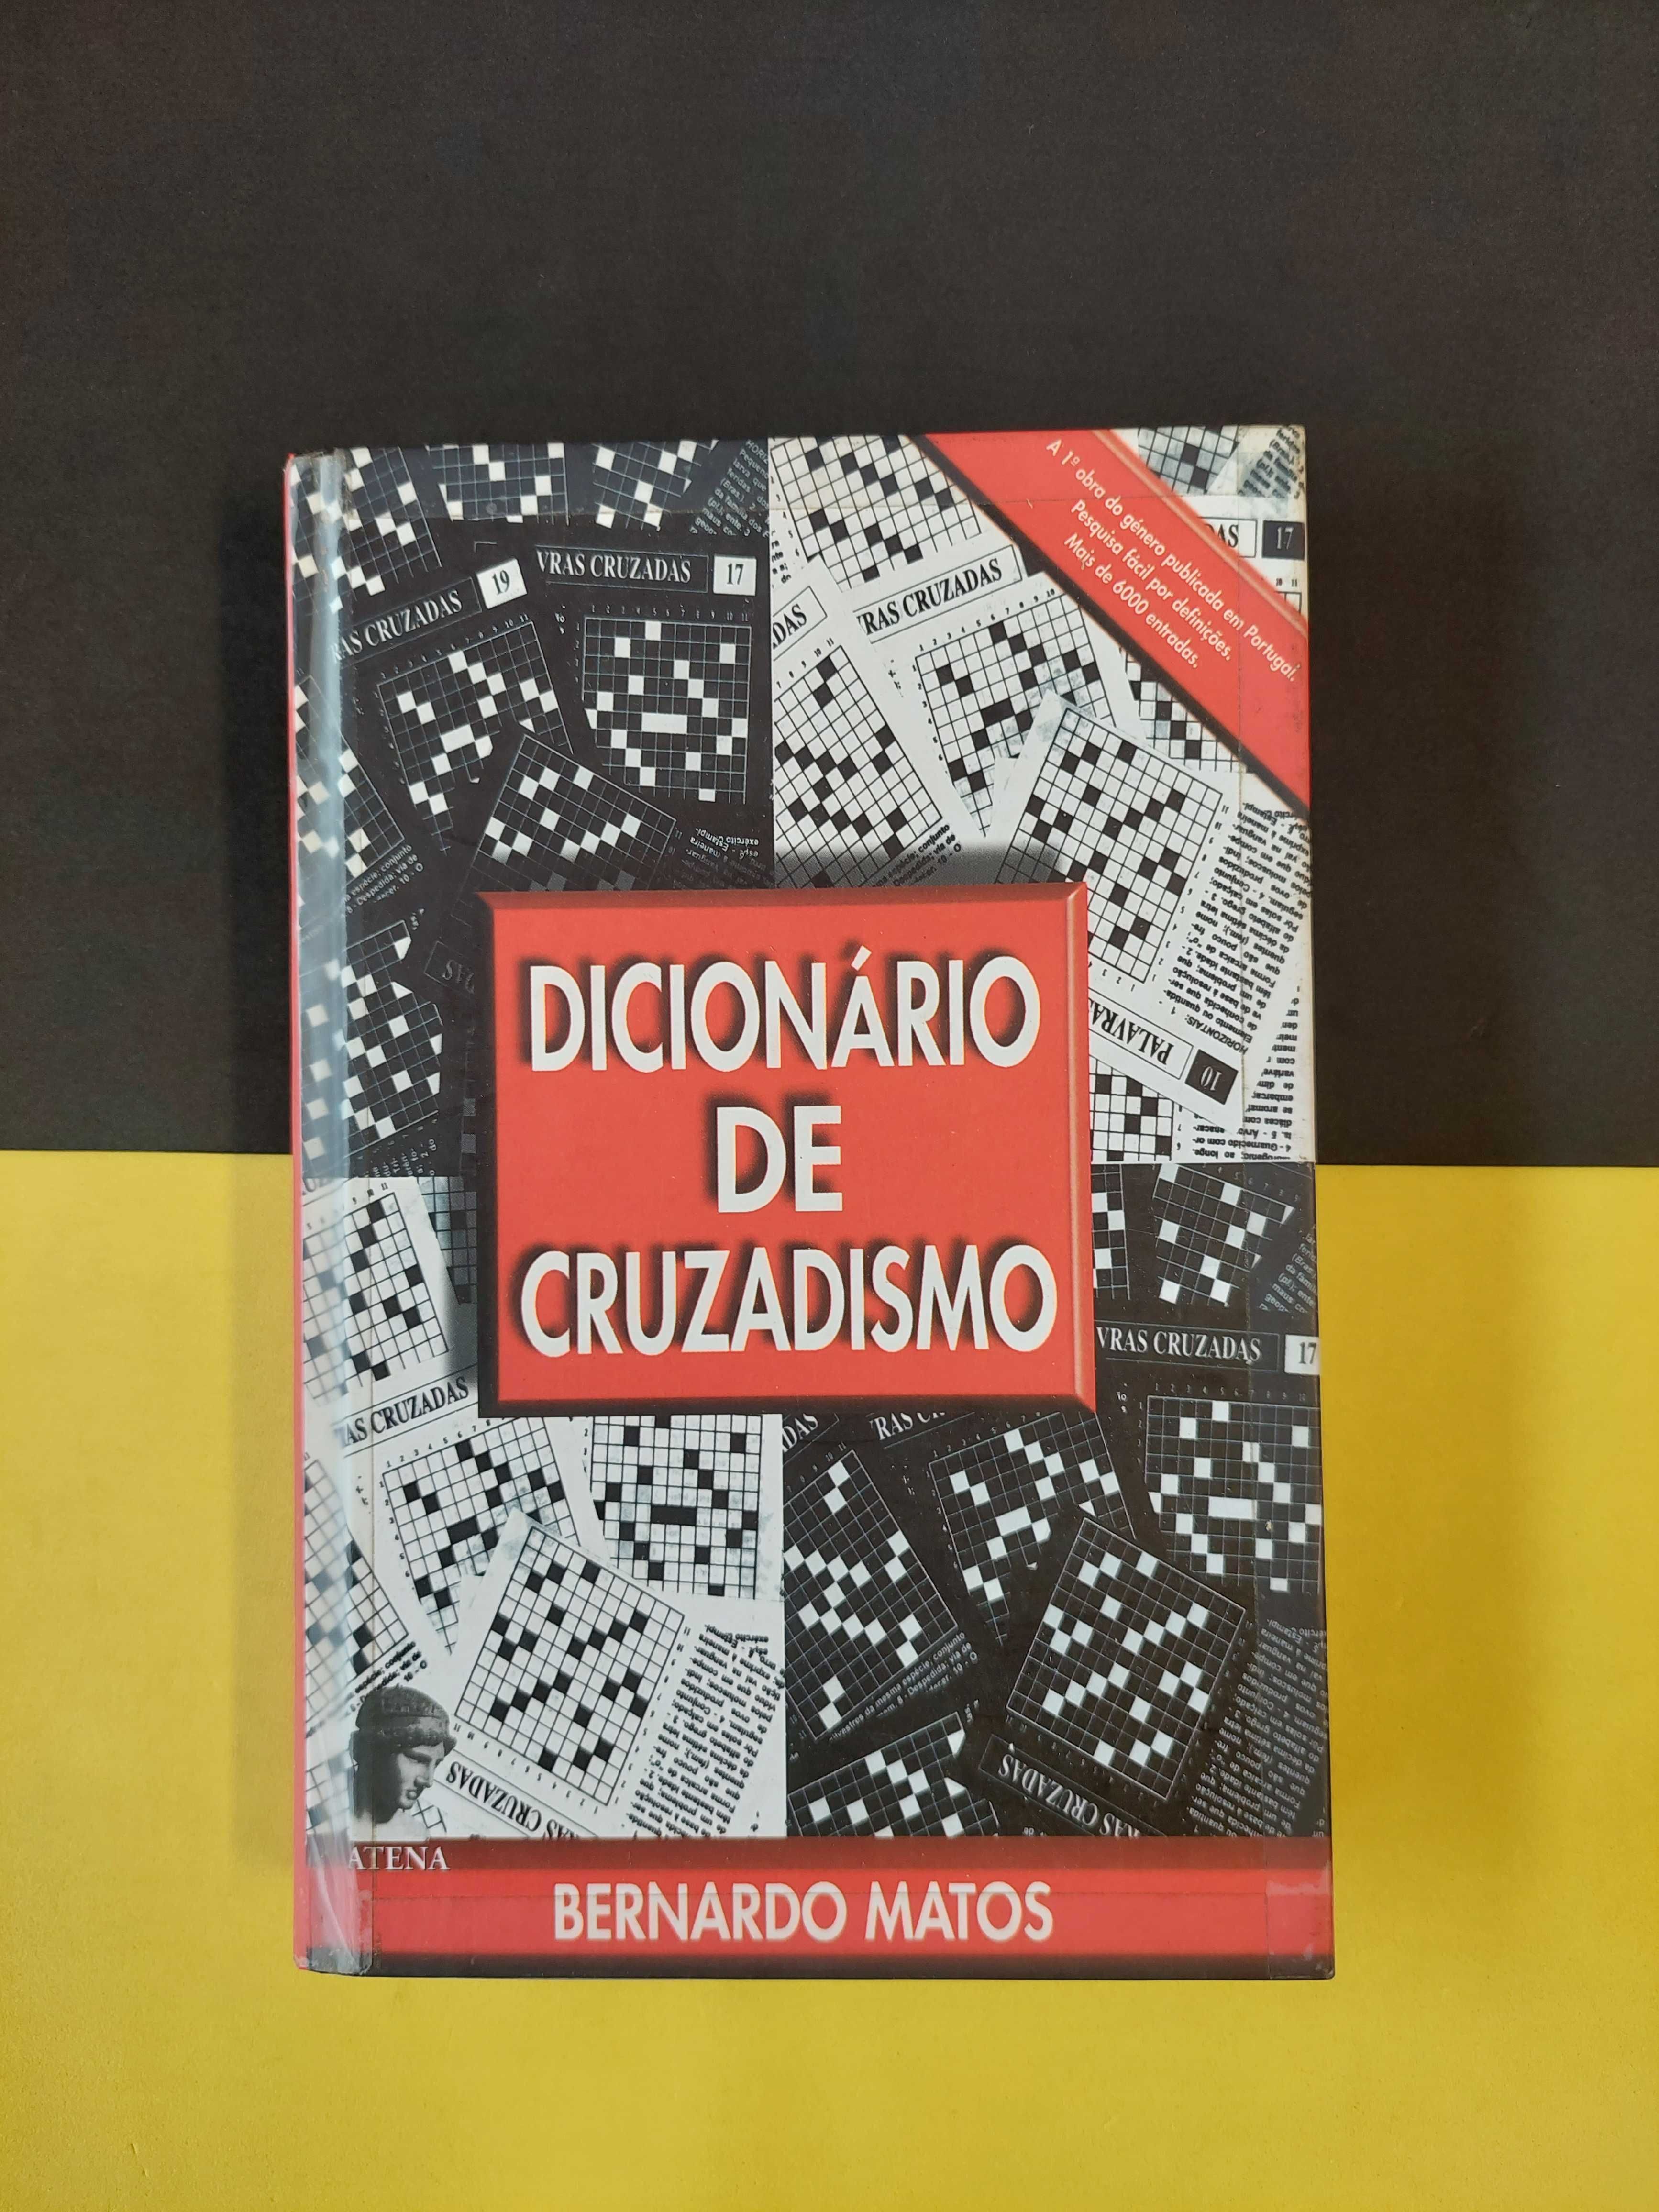 Bernardo Matos - Dicionário de cruzadismo